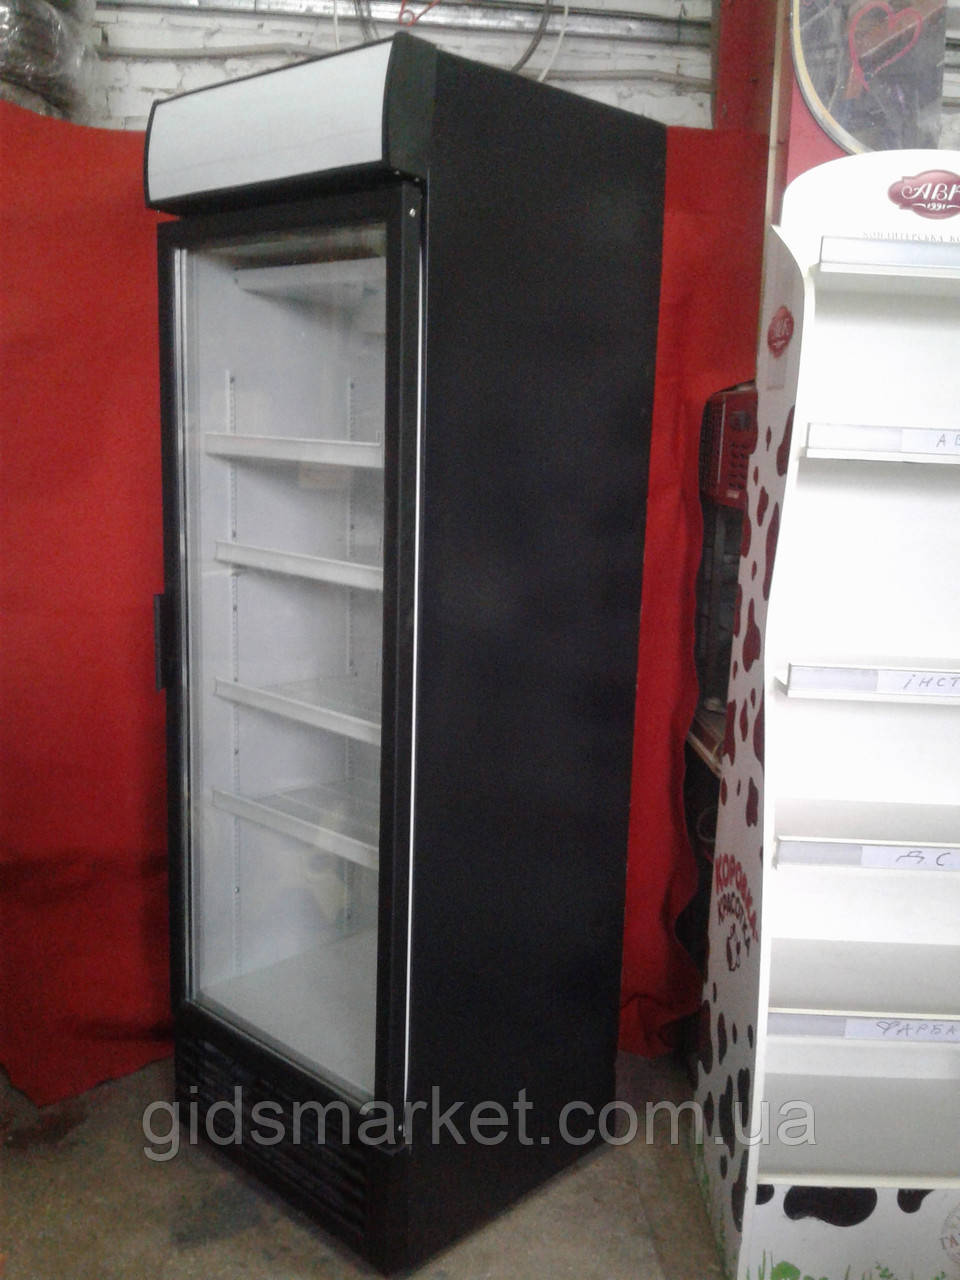 Холодильна шафа Інтер 400 Т. б у, холодильна шафа вітрина б/у, шафа холодильна б у